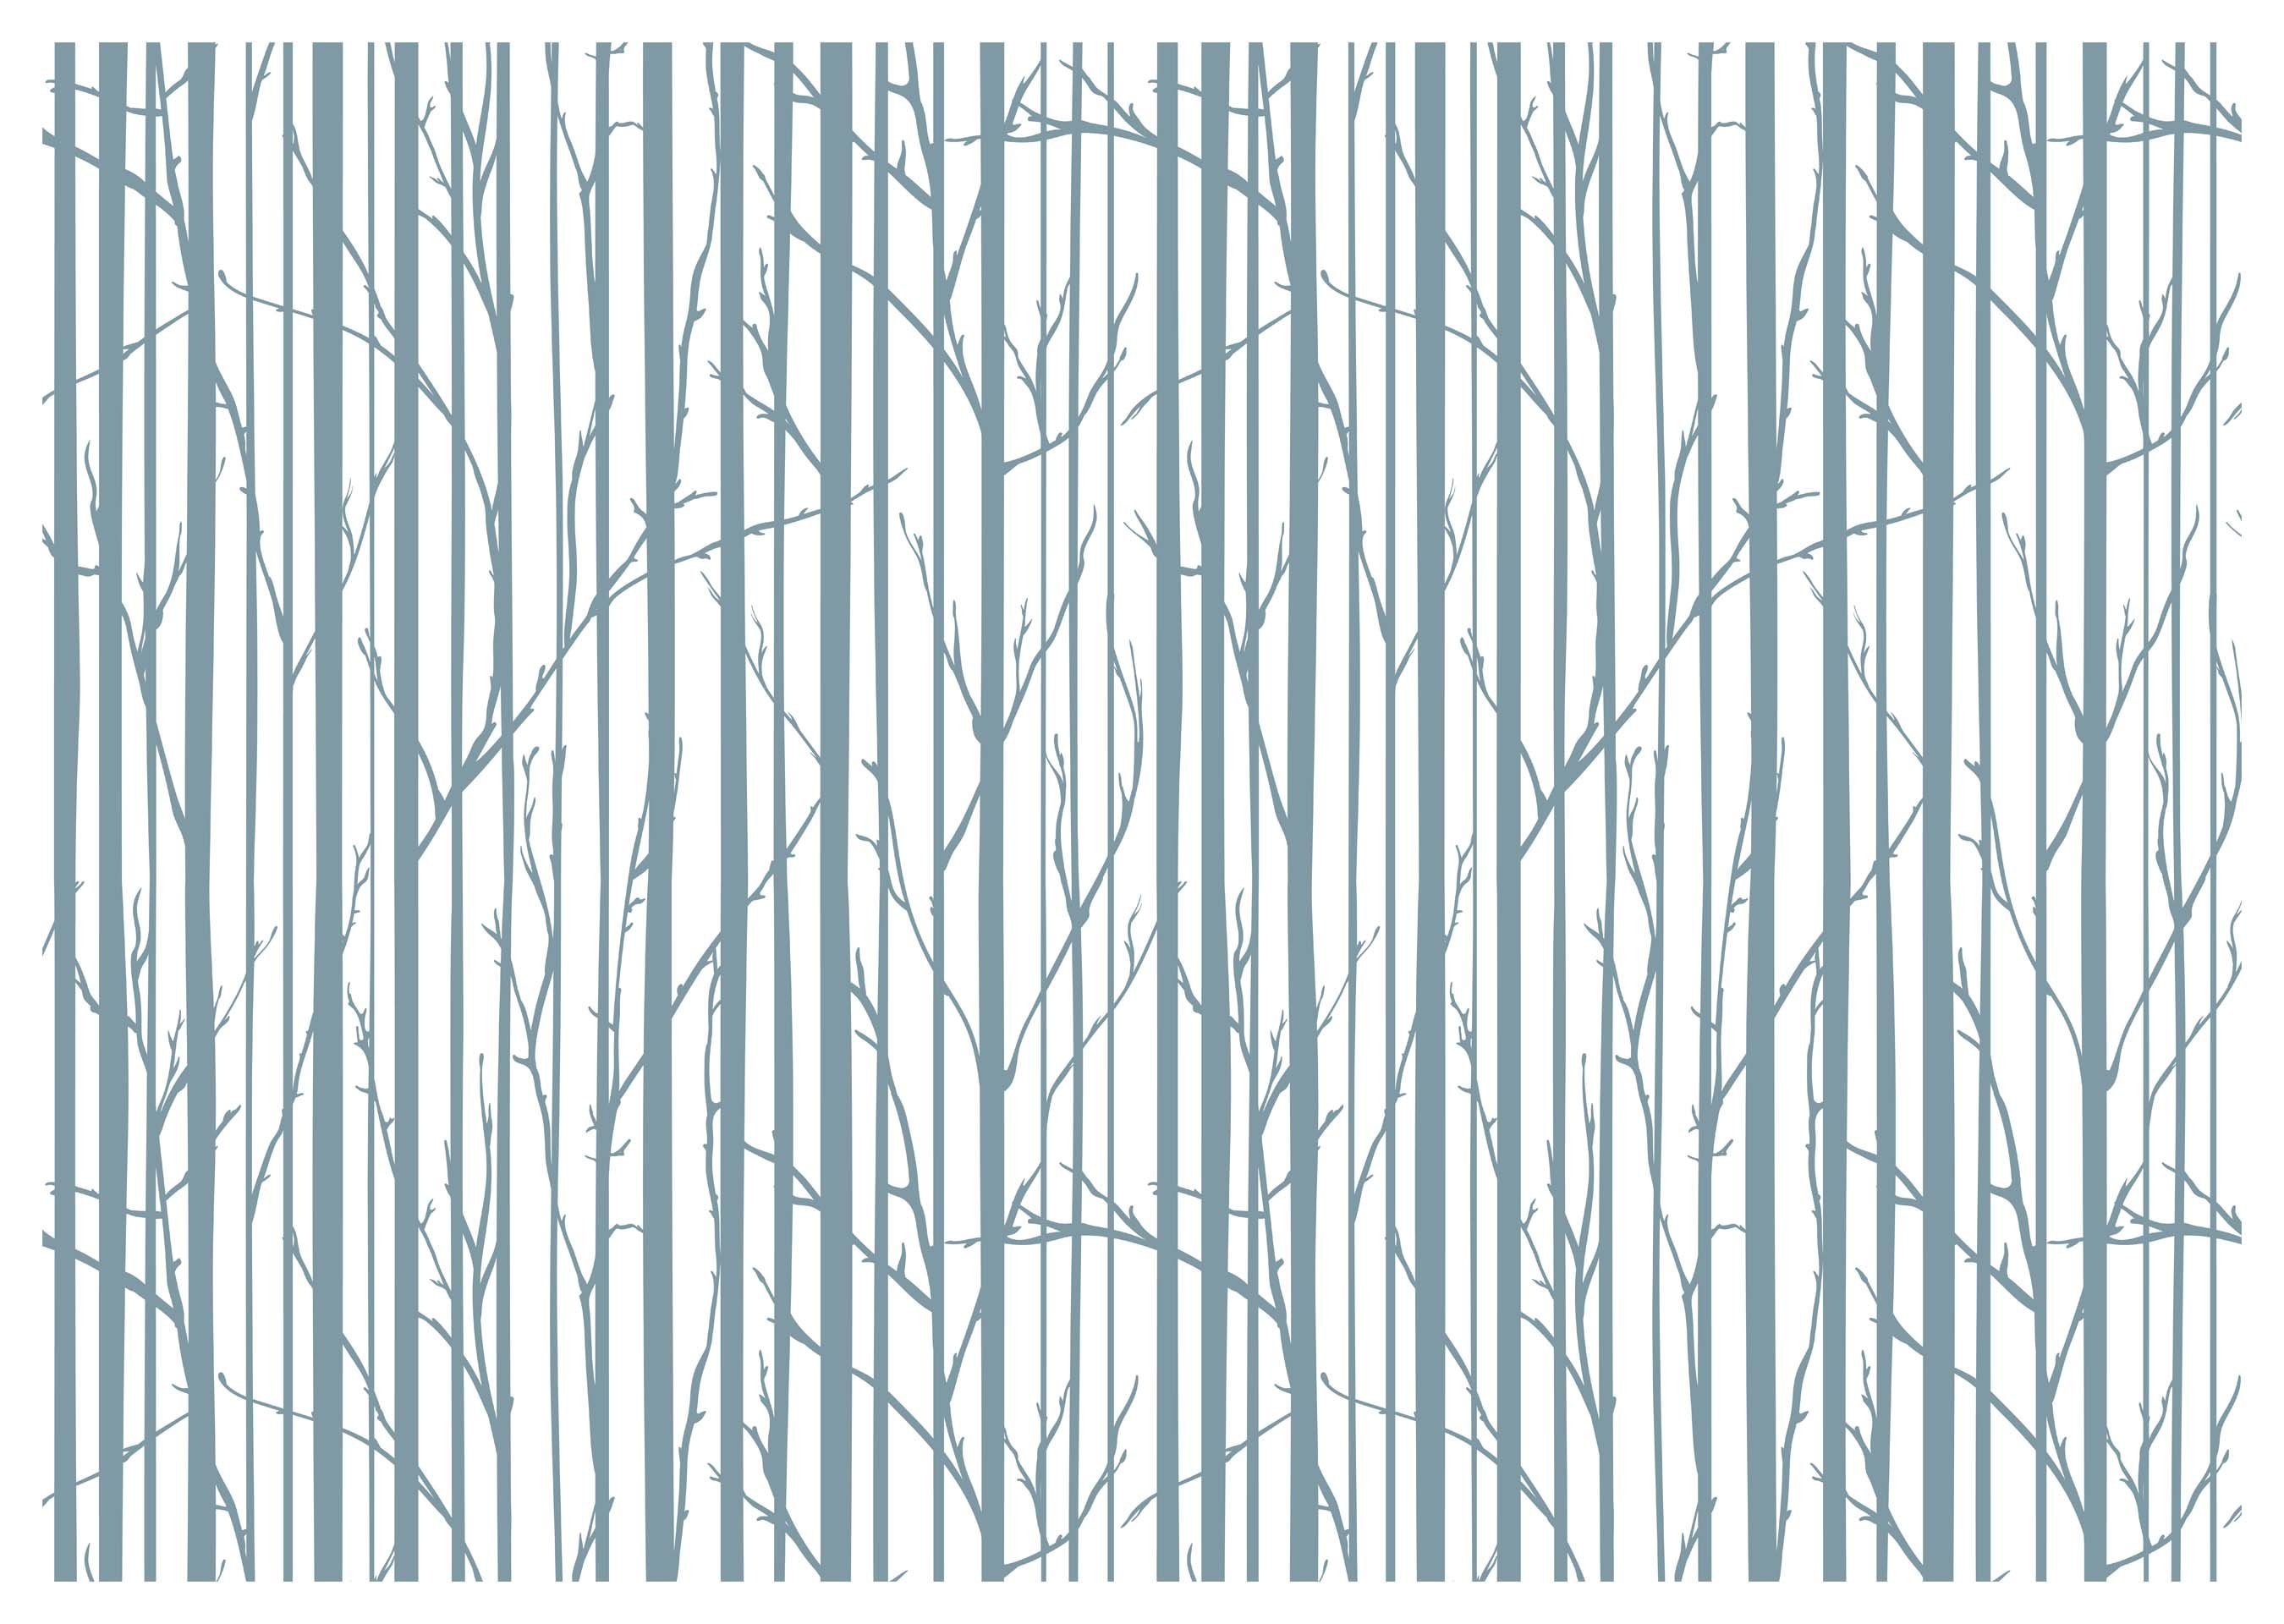 wandmotiv24 Fototapete Wald Bäume minimalistisch, glatt, Wandtapete, Motivtapete, matt, Vliestapete